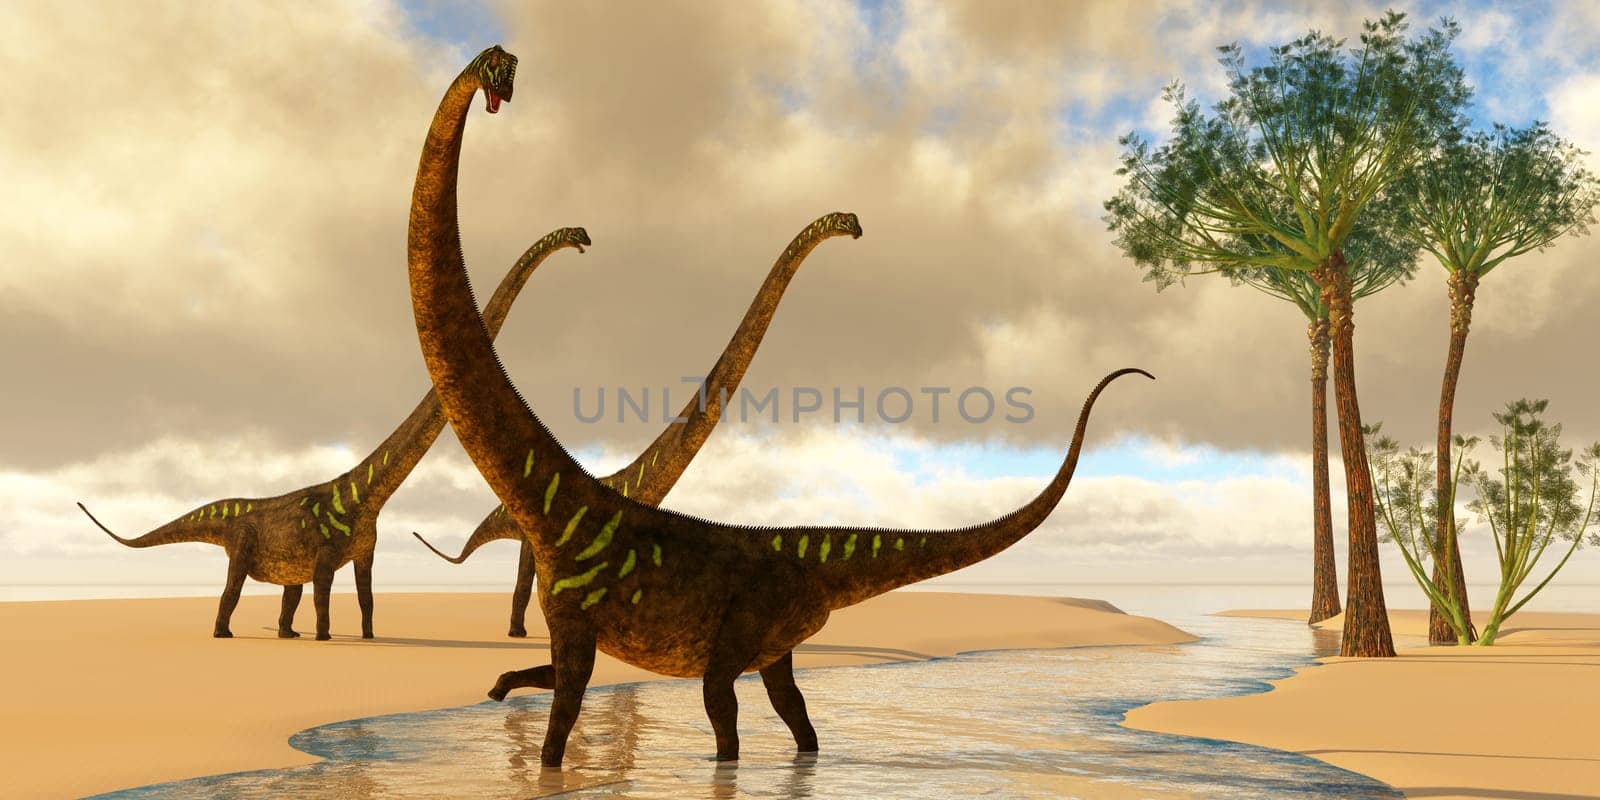 Mamenchisaurus at the Beach by Catmando